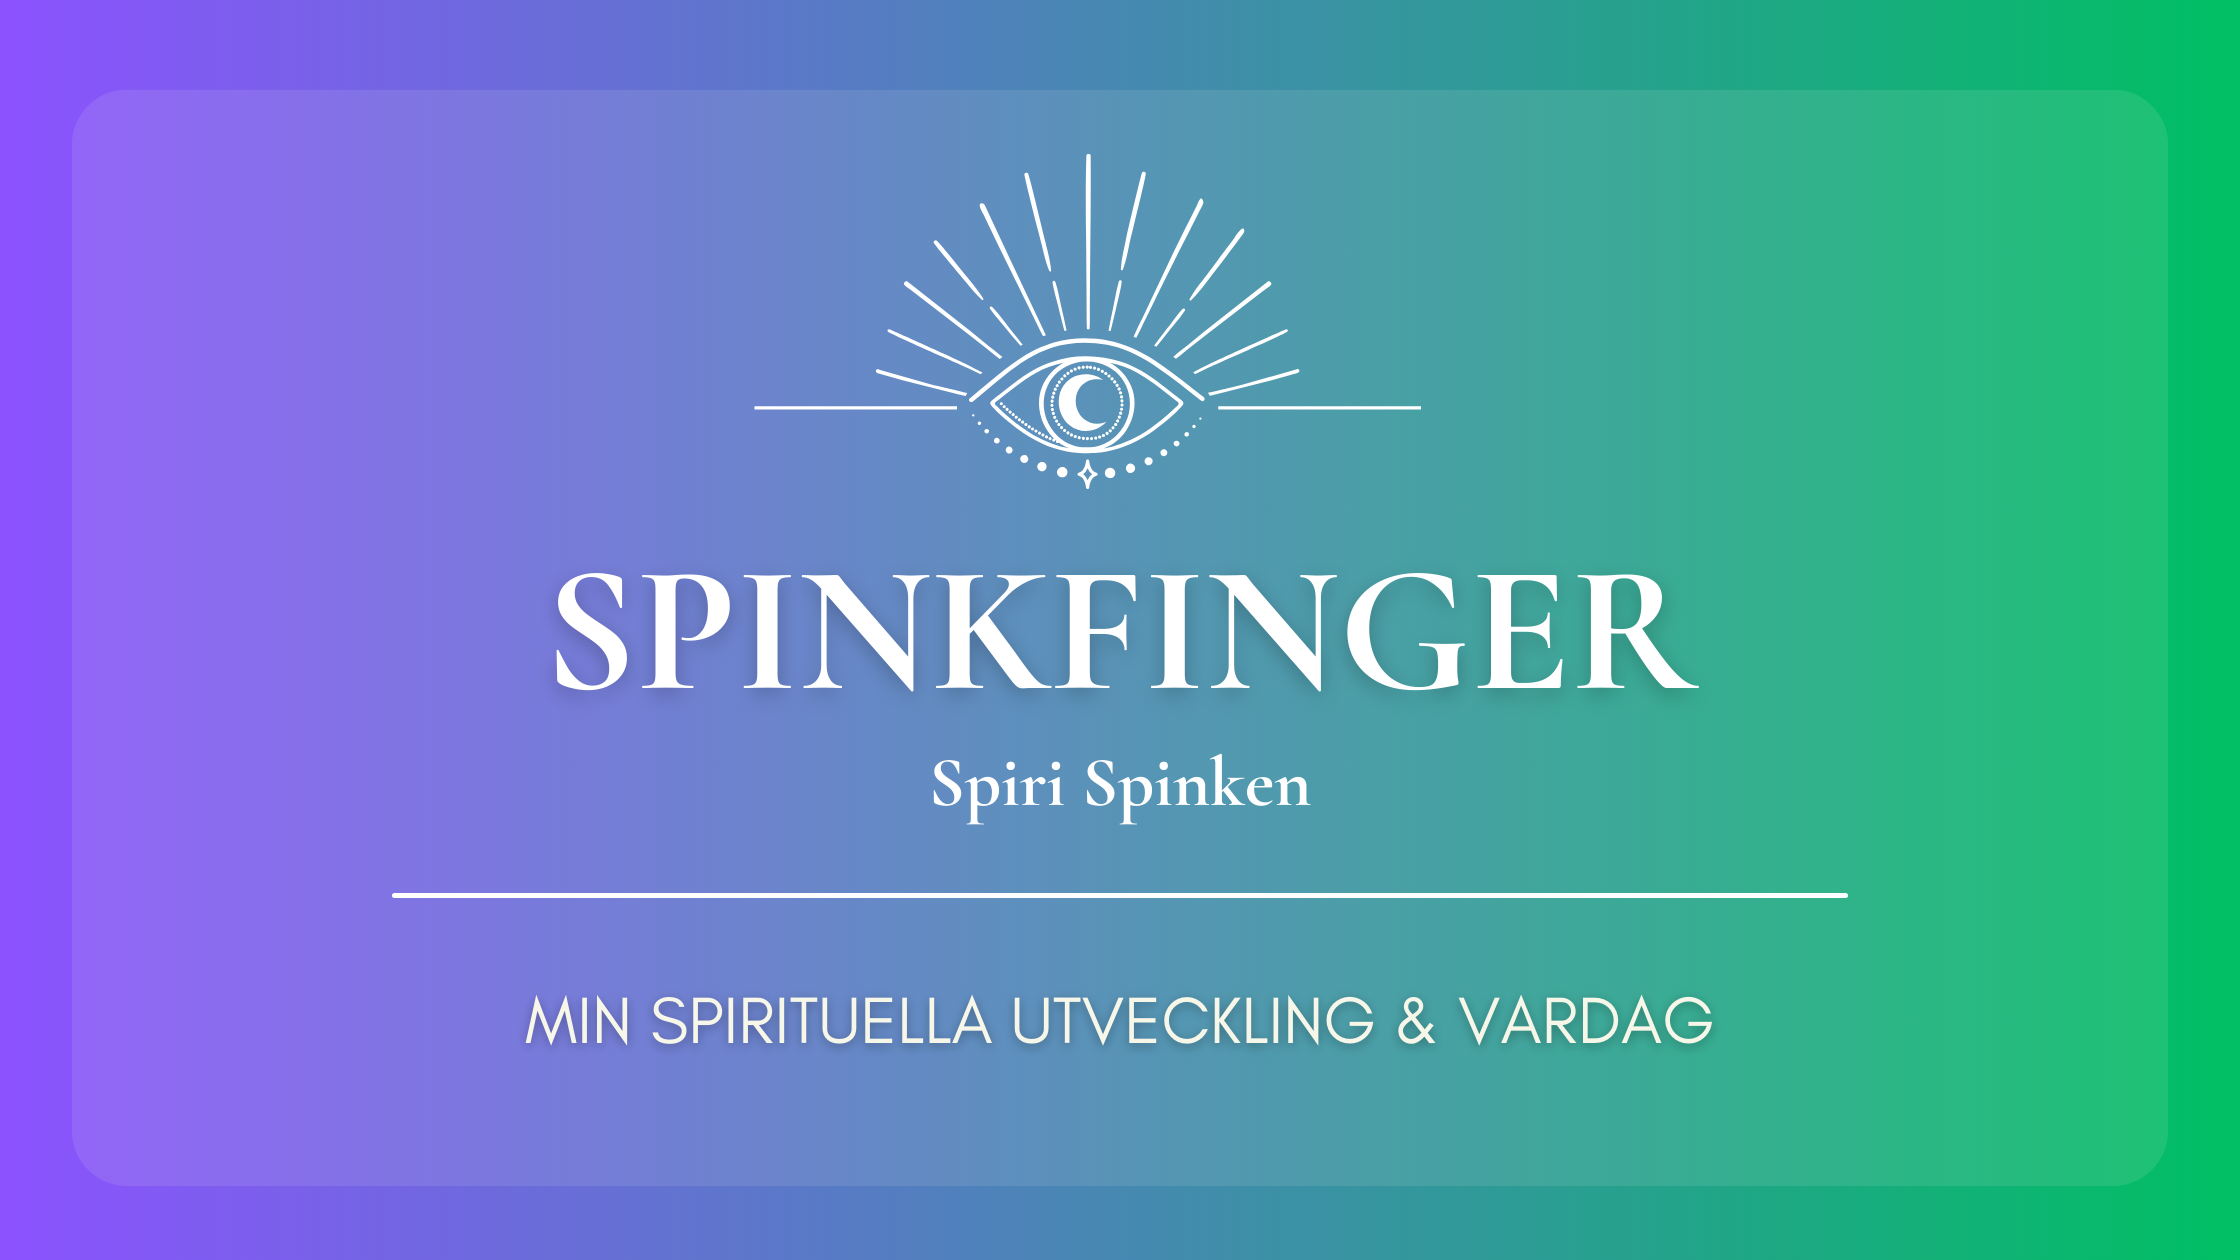 Spinkfinger